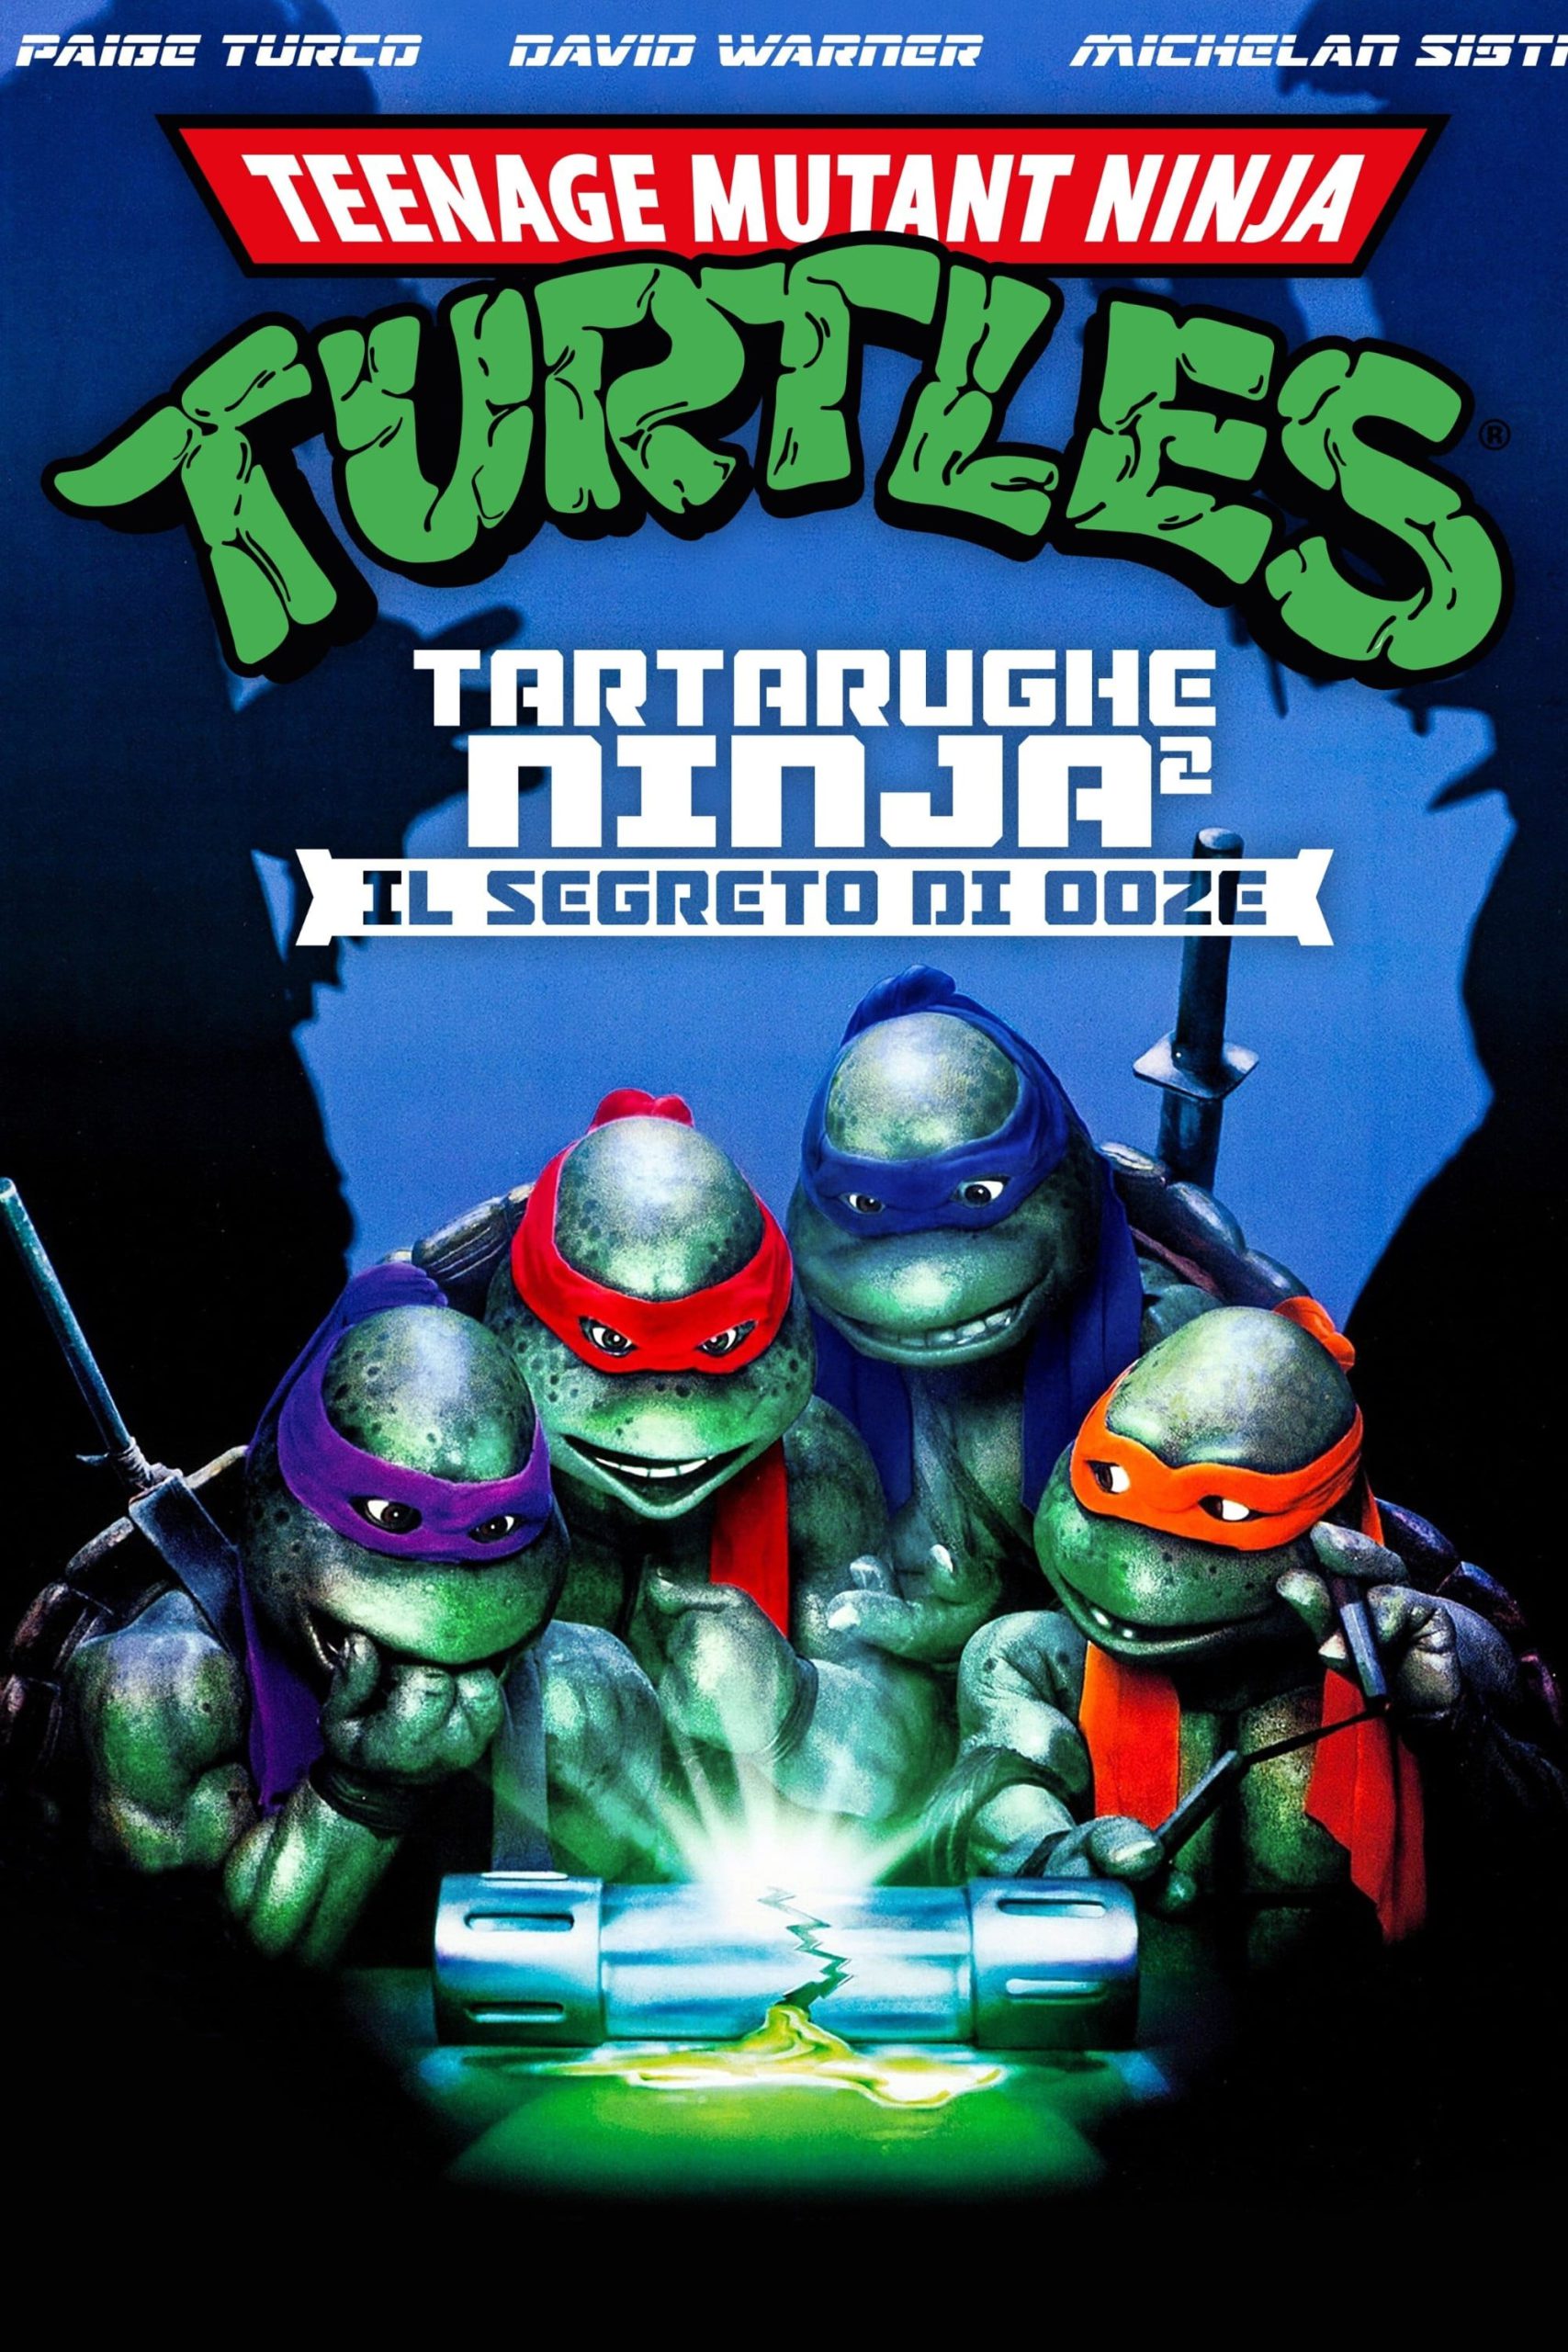 Tartarughe Ninja 2 – Il segreto di Ooze [HD] (1991)